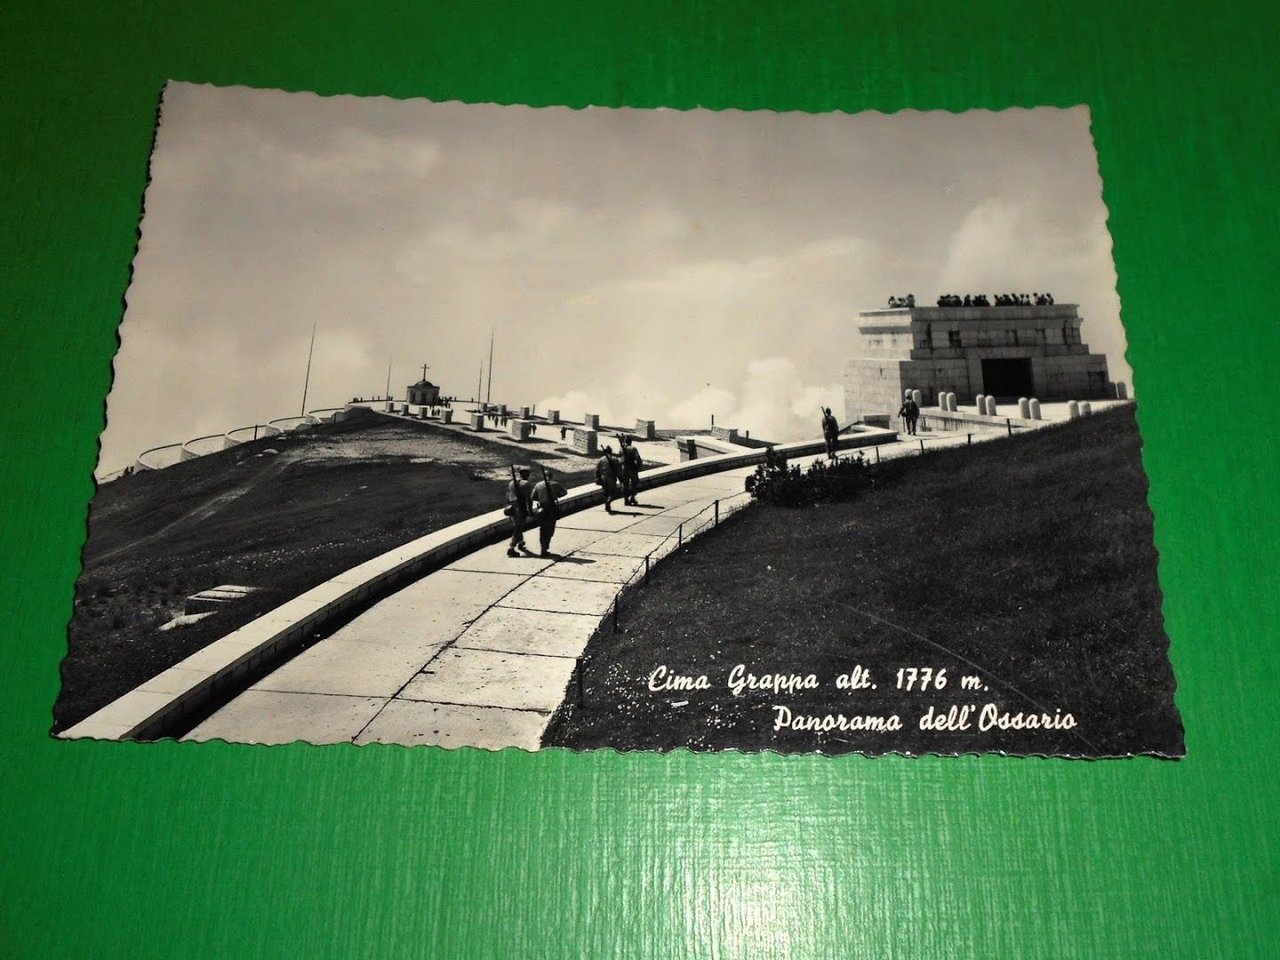 Cartolina Cima Grappa - Panorama dell' Ossario 1962.